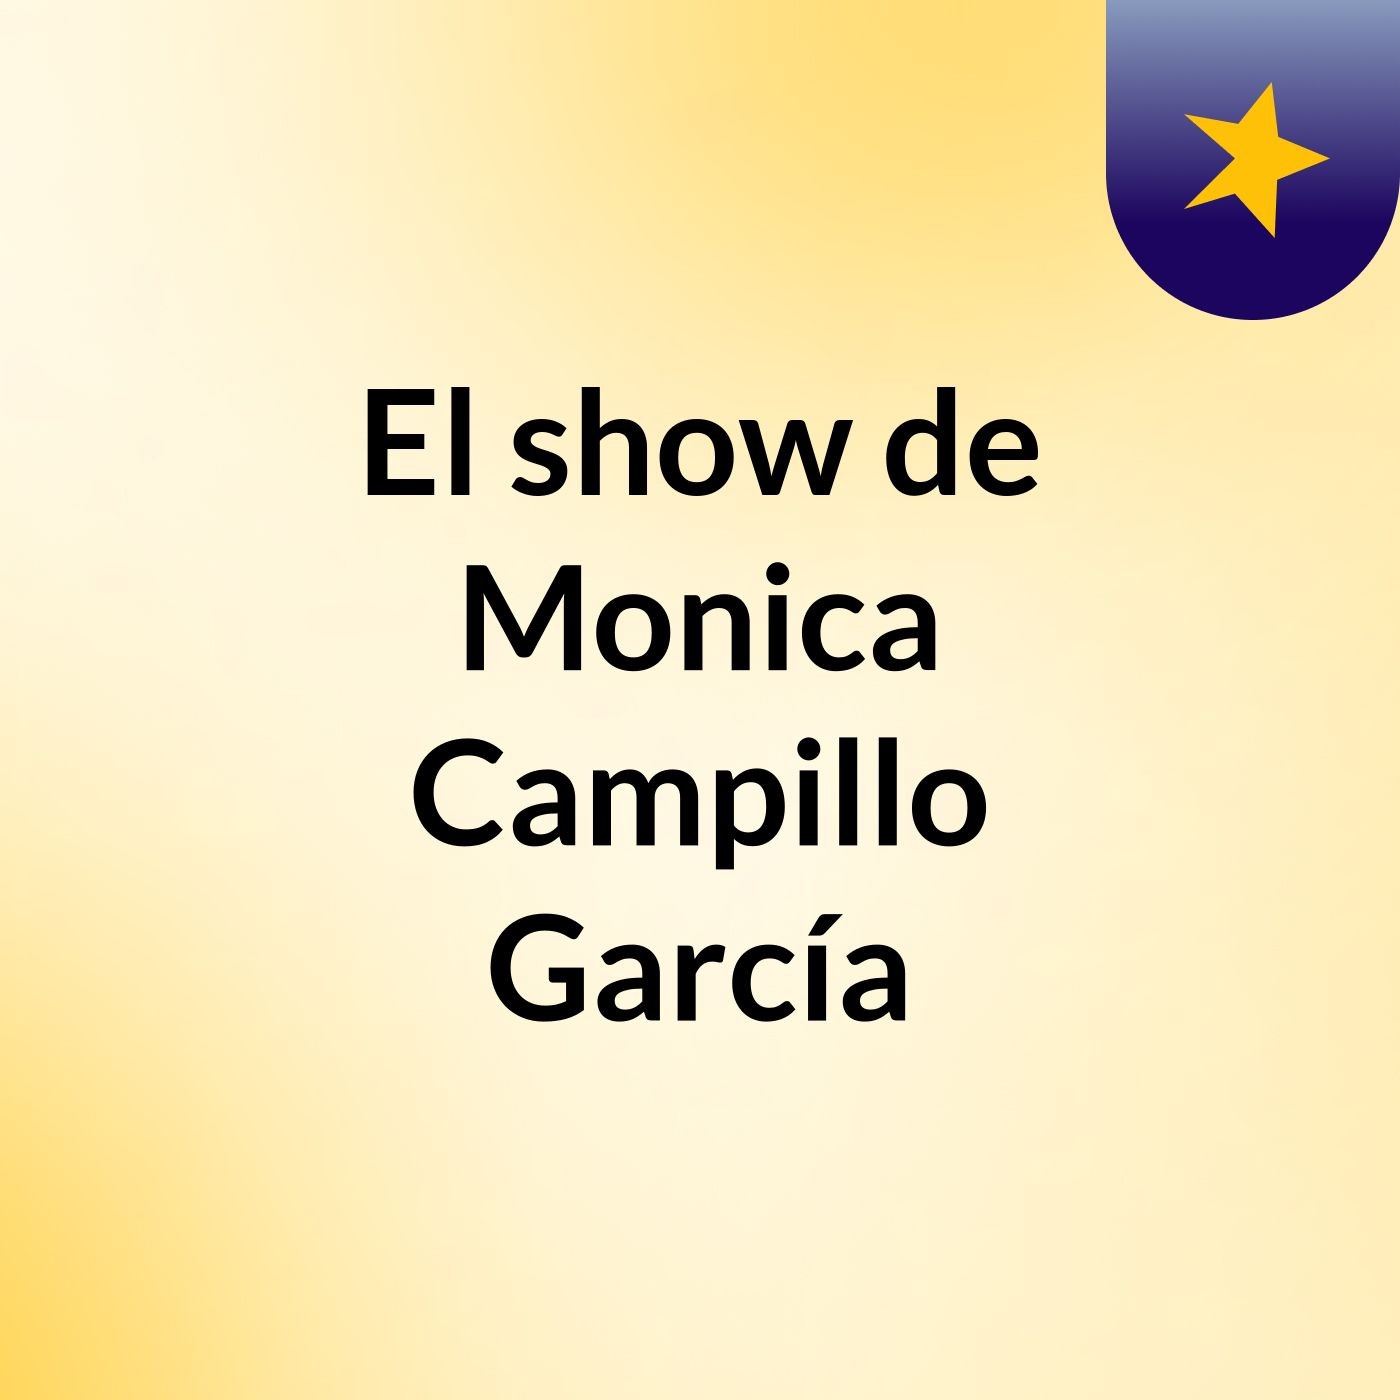 El show de Monica Campillo García